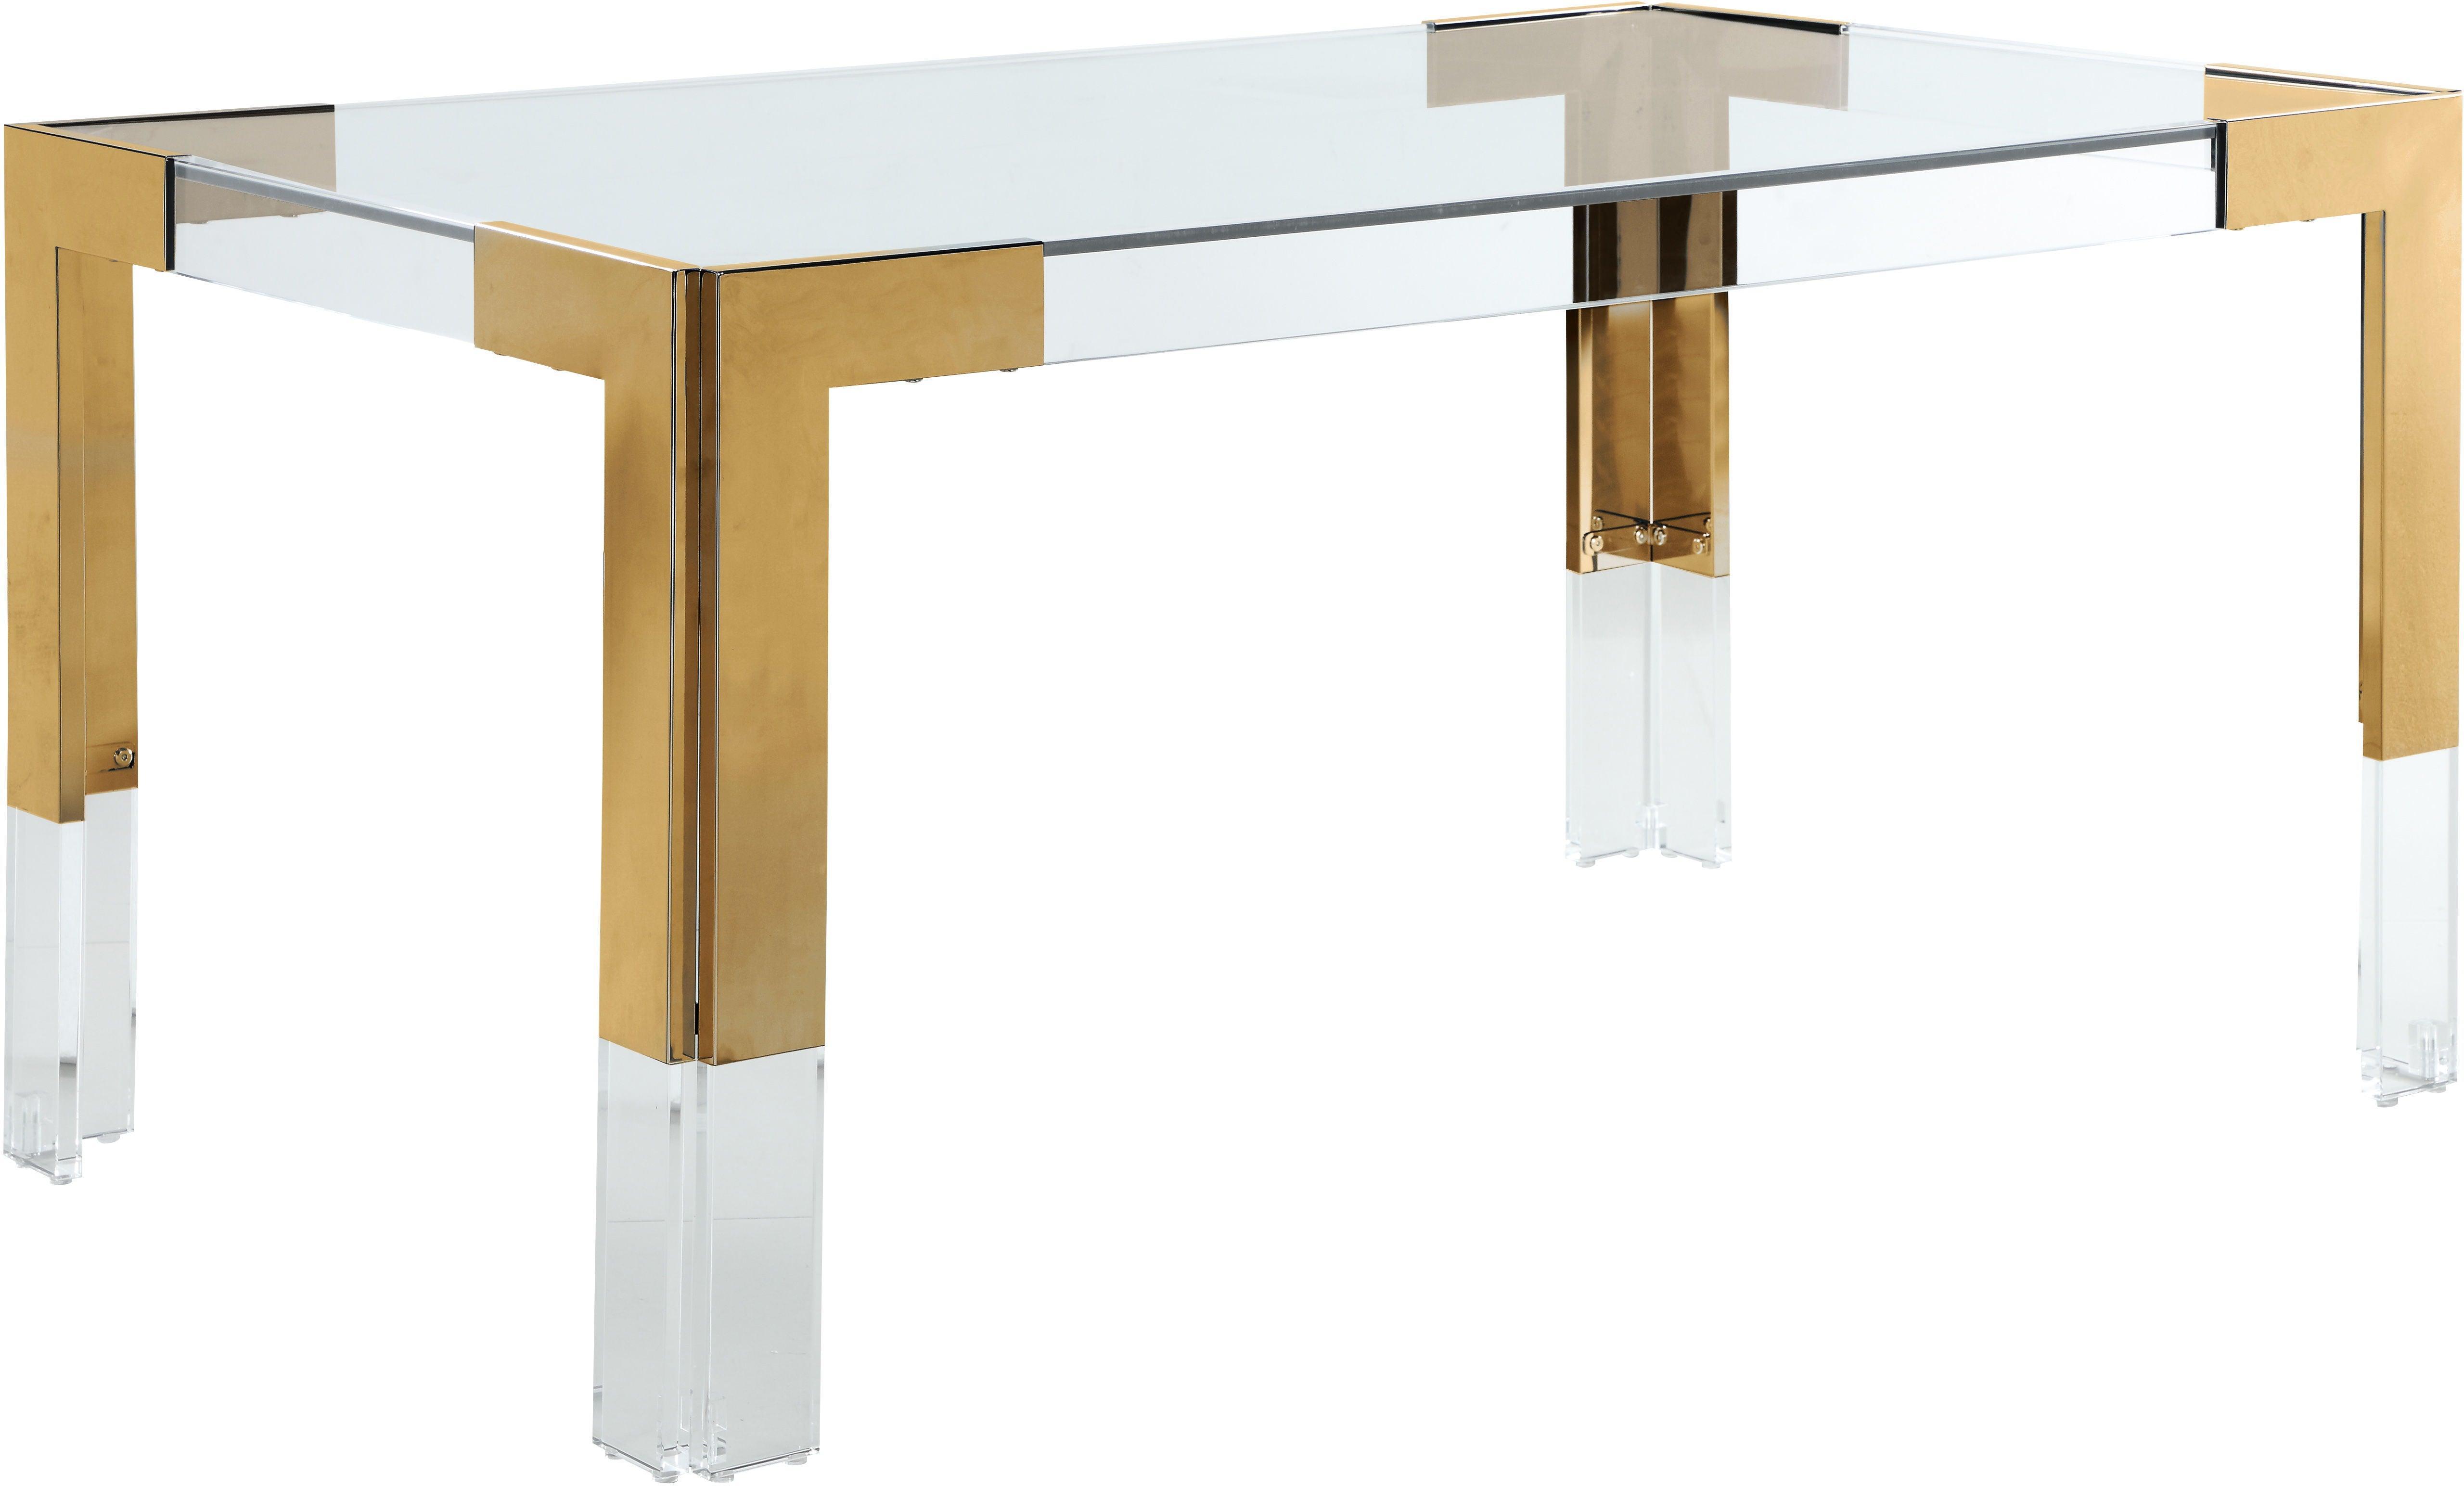 Meridian Furniture - Casper - Dining Table - 5th Avenue Furniture